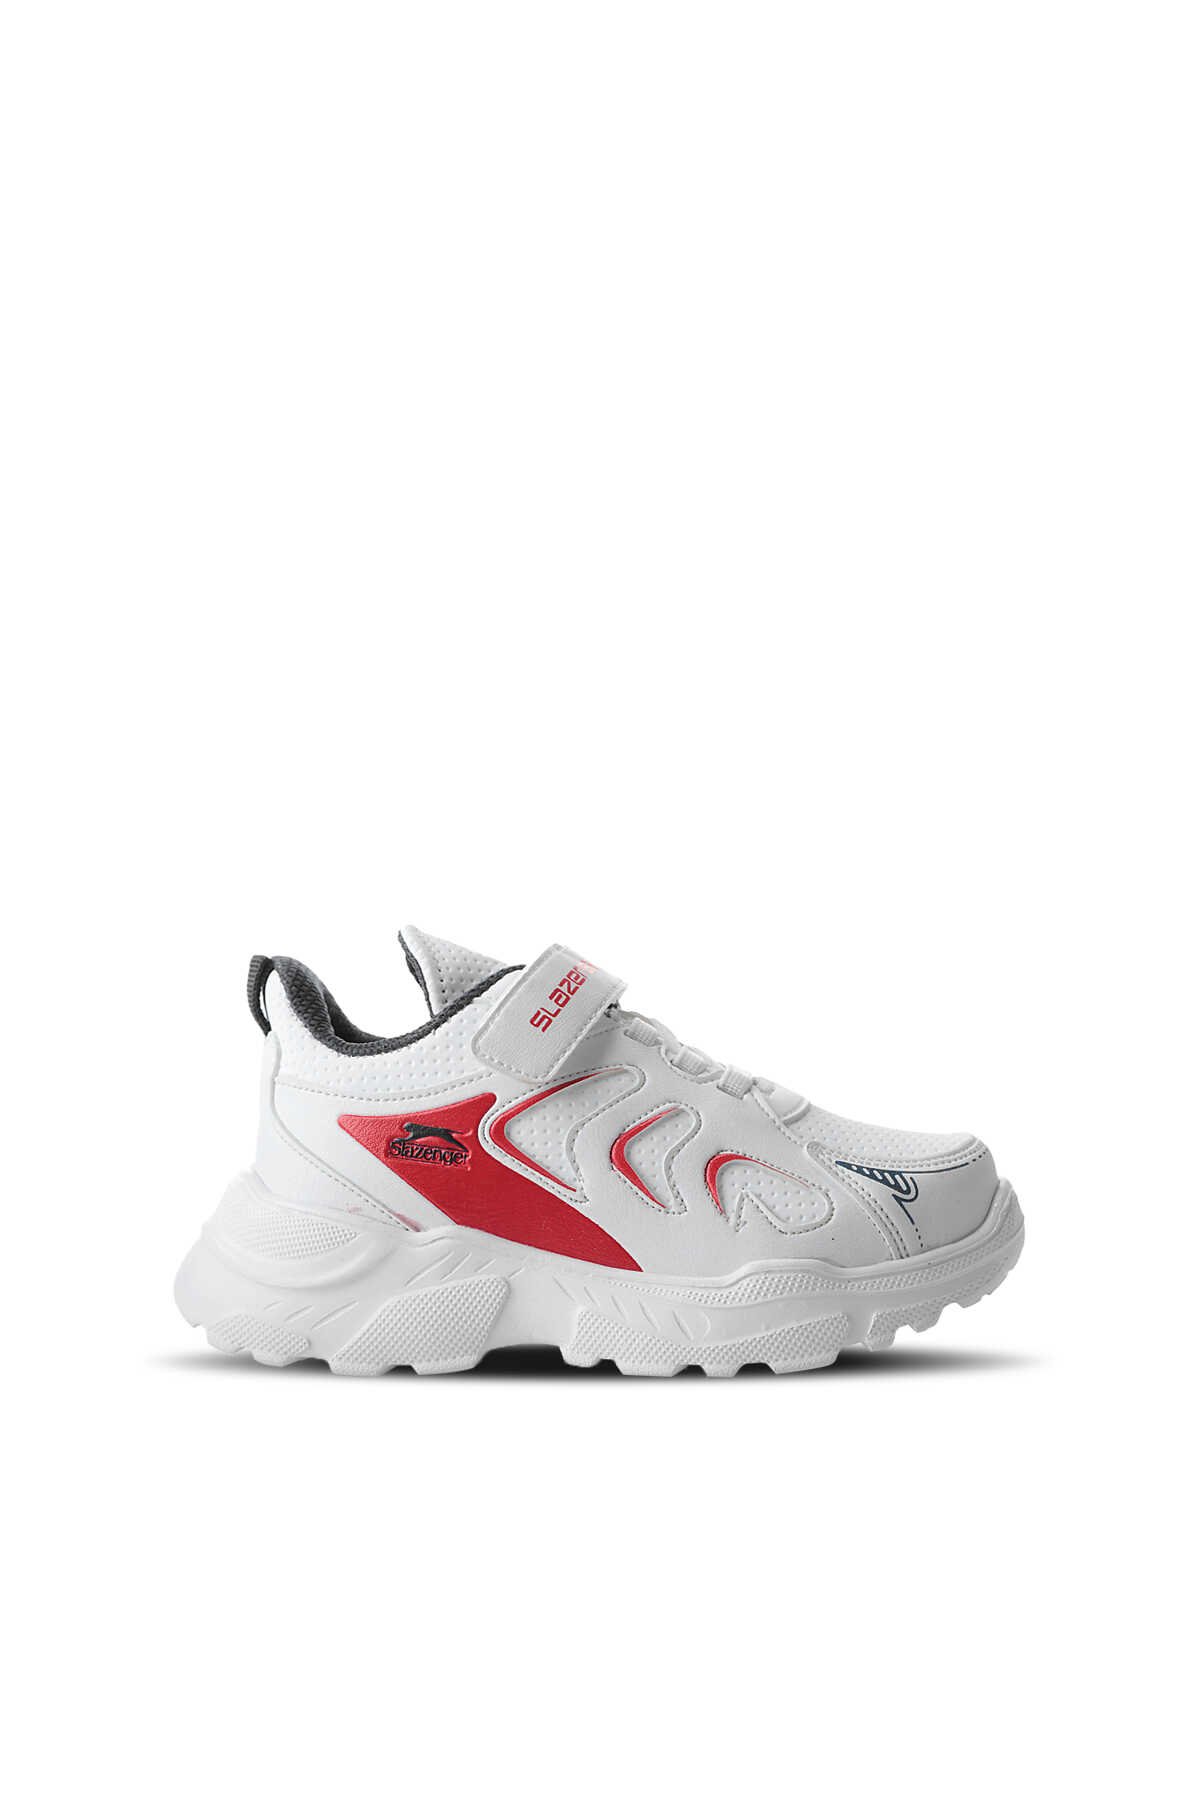 Slazenger - Slazenger KANEVA Sneaker Erkek Çocuk Ayakkabı Beyaz / Lacivert / Kırmızı